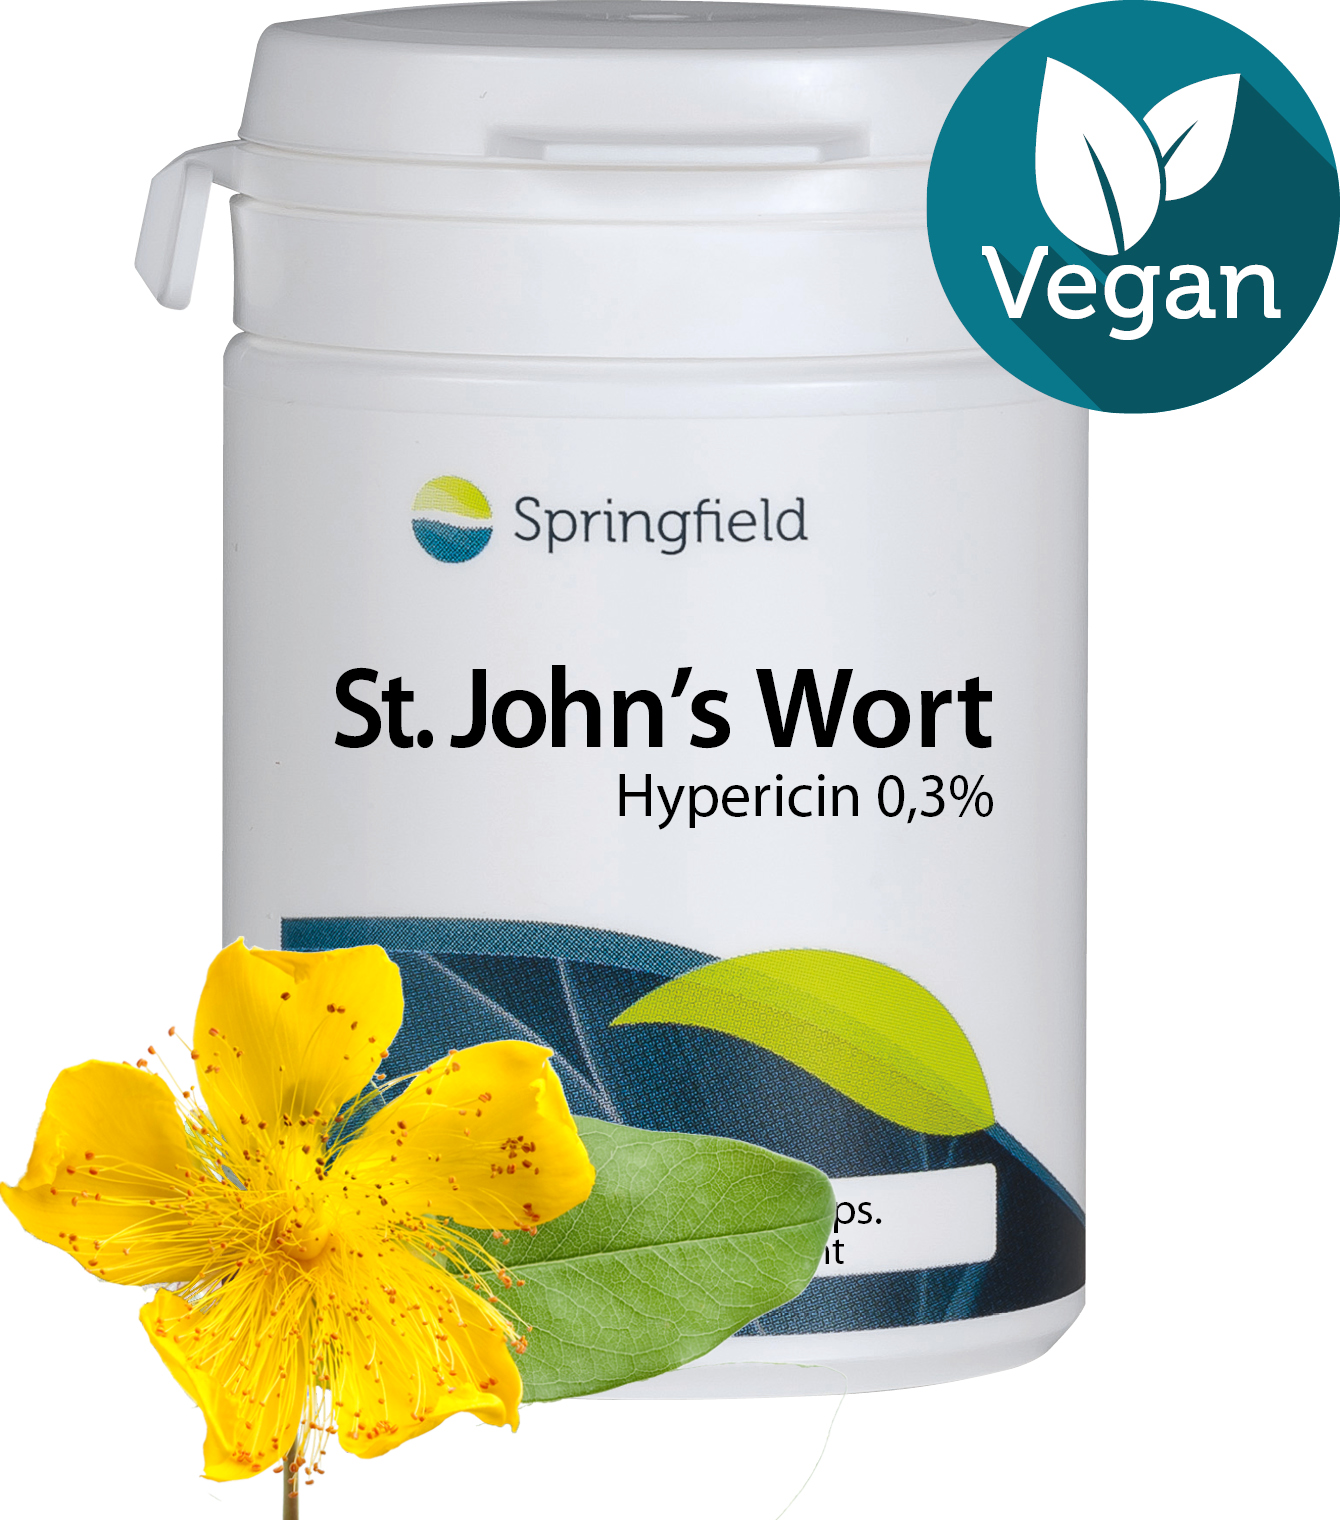 St. John’s Wort - Hypericin 0,3% - Vegan